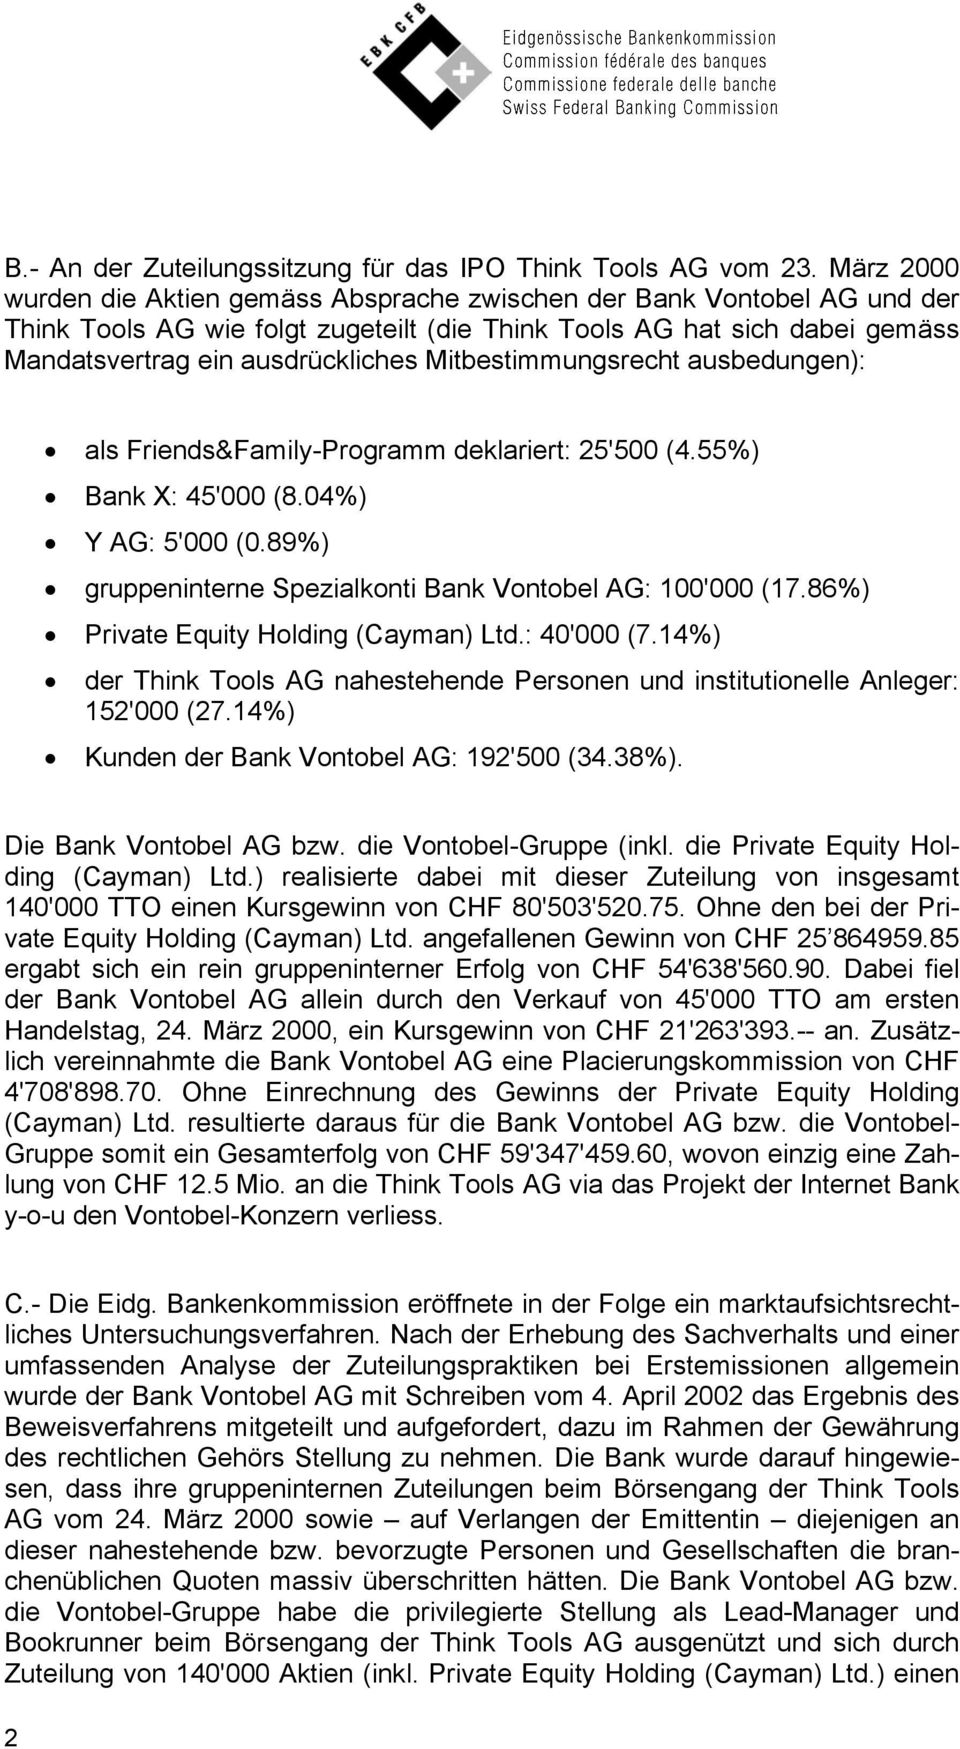 Mitbestimmungsrecht ausbedungen): als Friends&Family-Programm deklariert: 25'500 (4.55%) Bank X: 45'000 (8.04%) Y AG: 5'000 (0.89%) gruppeninterne Spezialkonti Bank Vontobel AG: 100'000 (17.